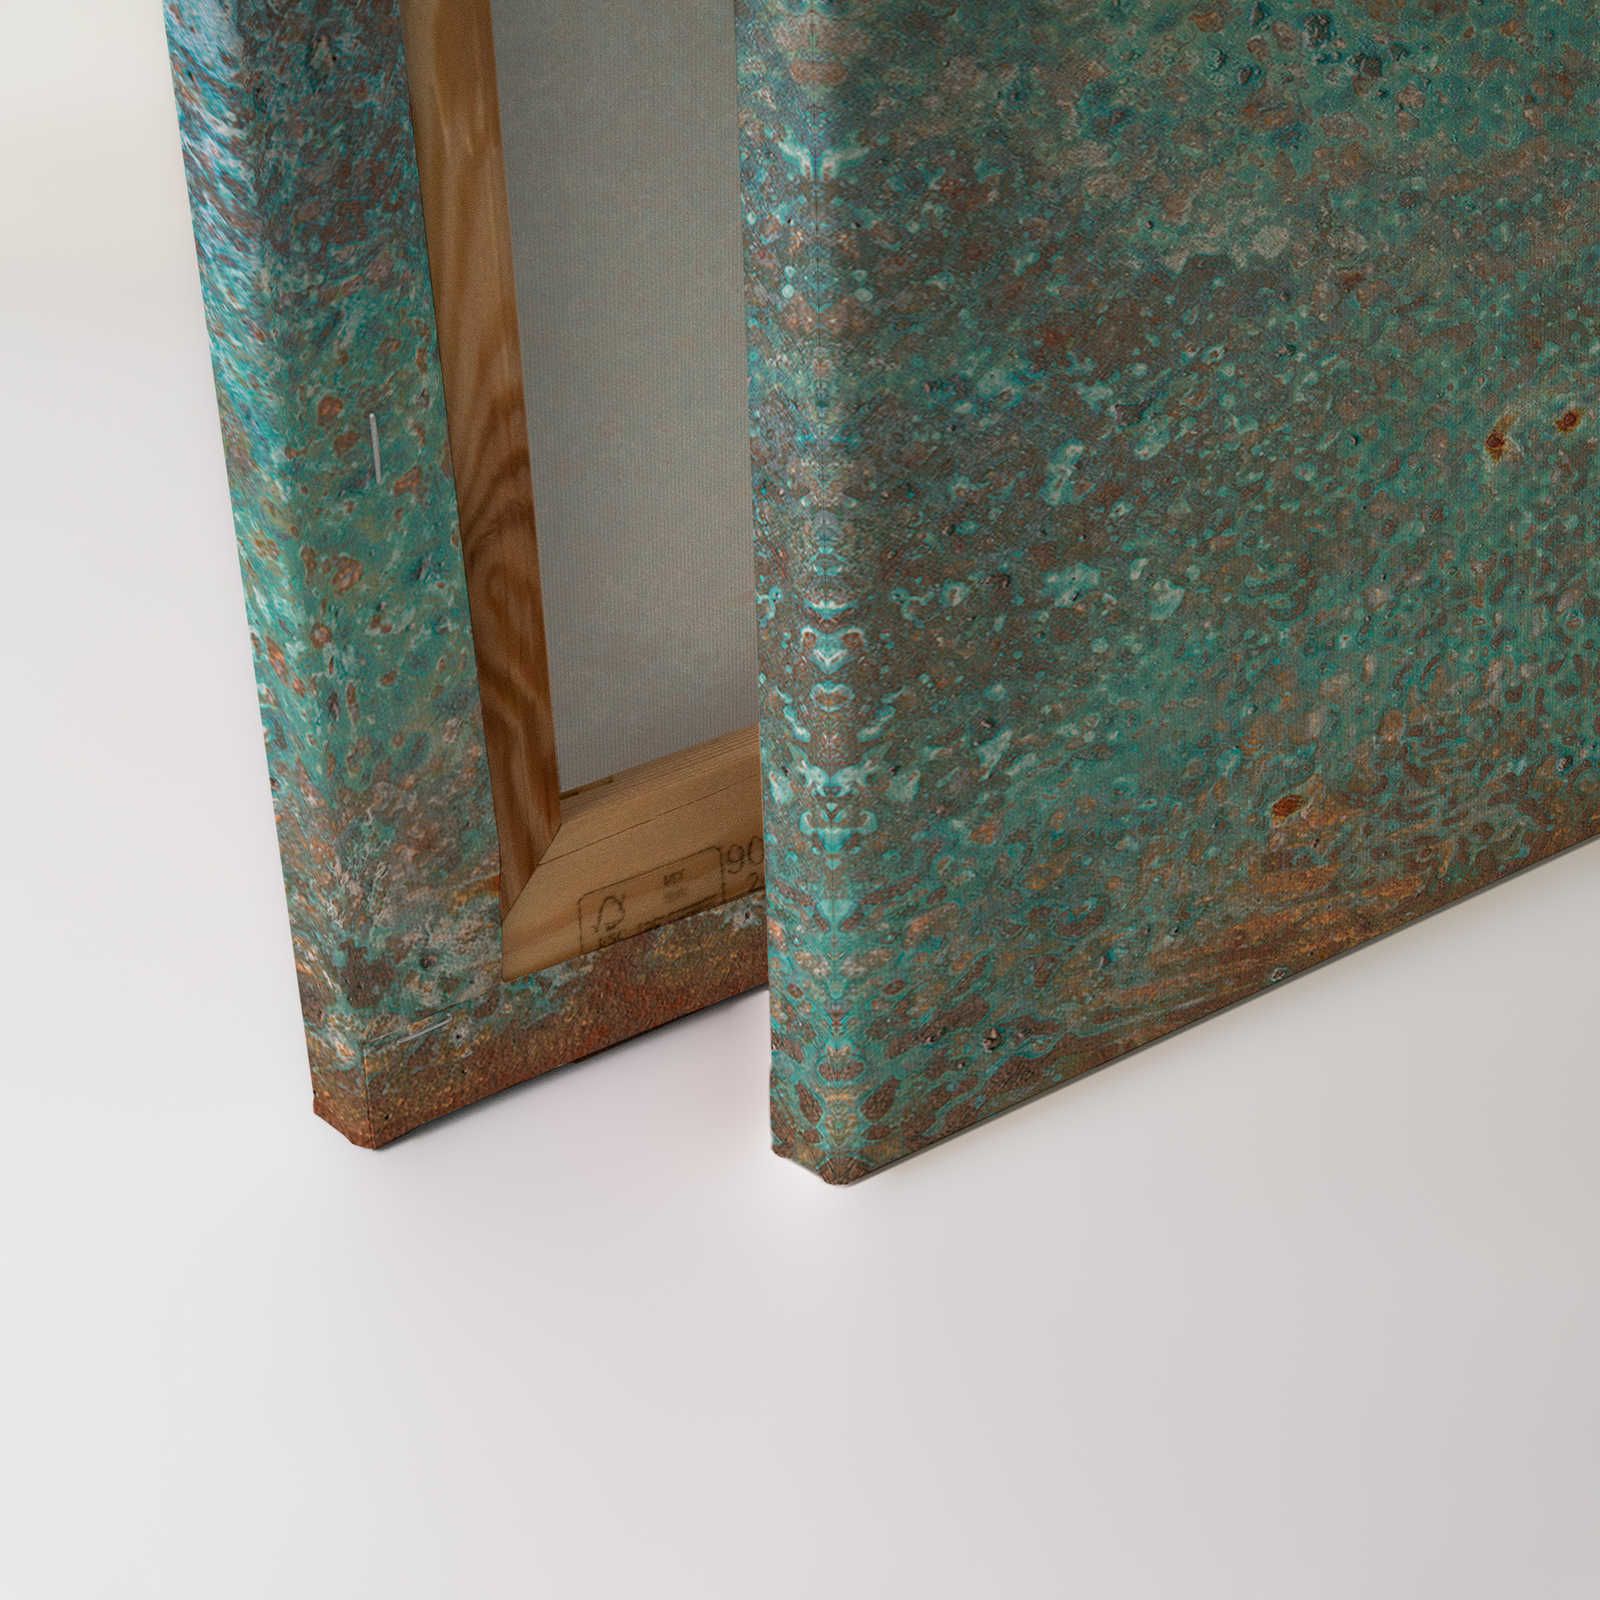             Toile aspect métal patine turquoise avec rouille - 0,90 m x 0,60 m
        